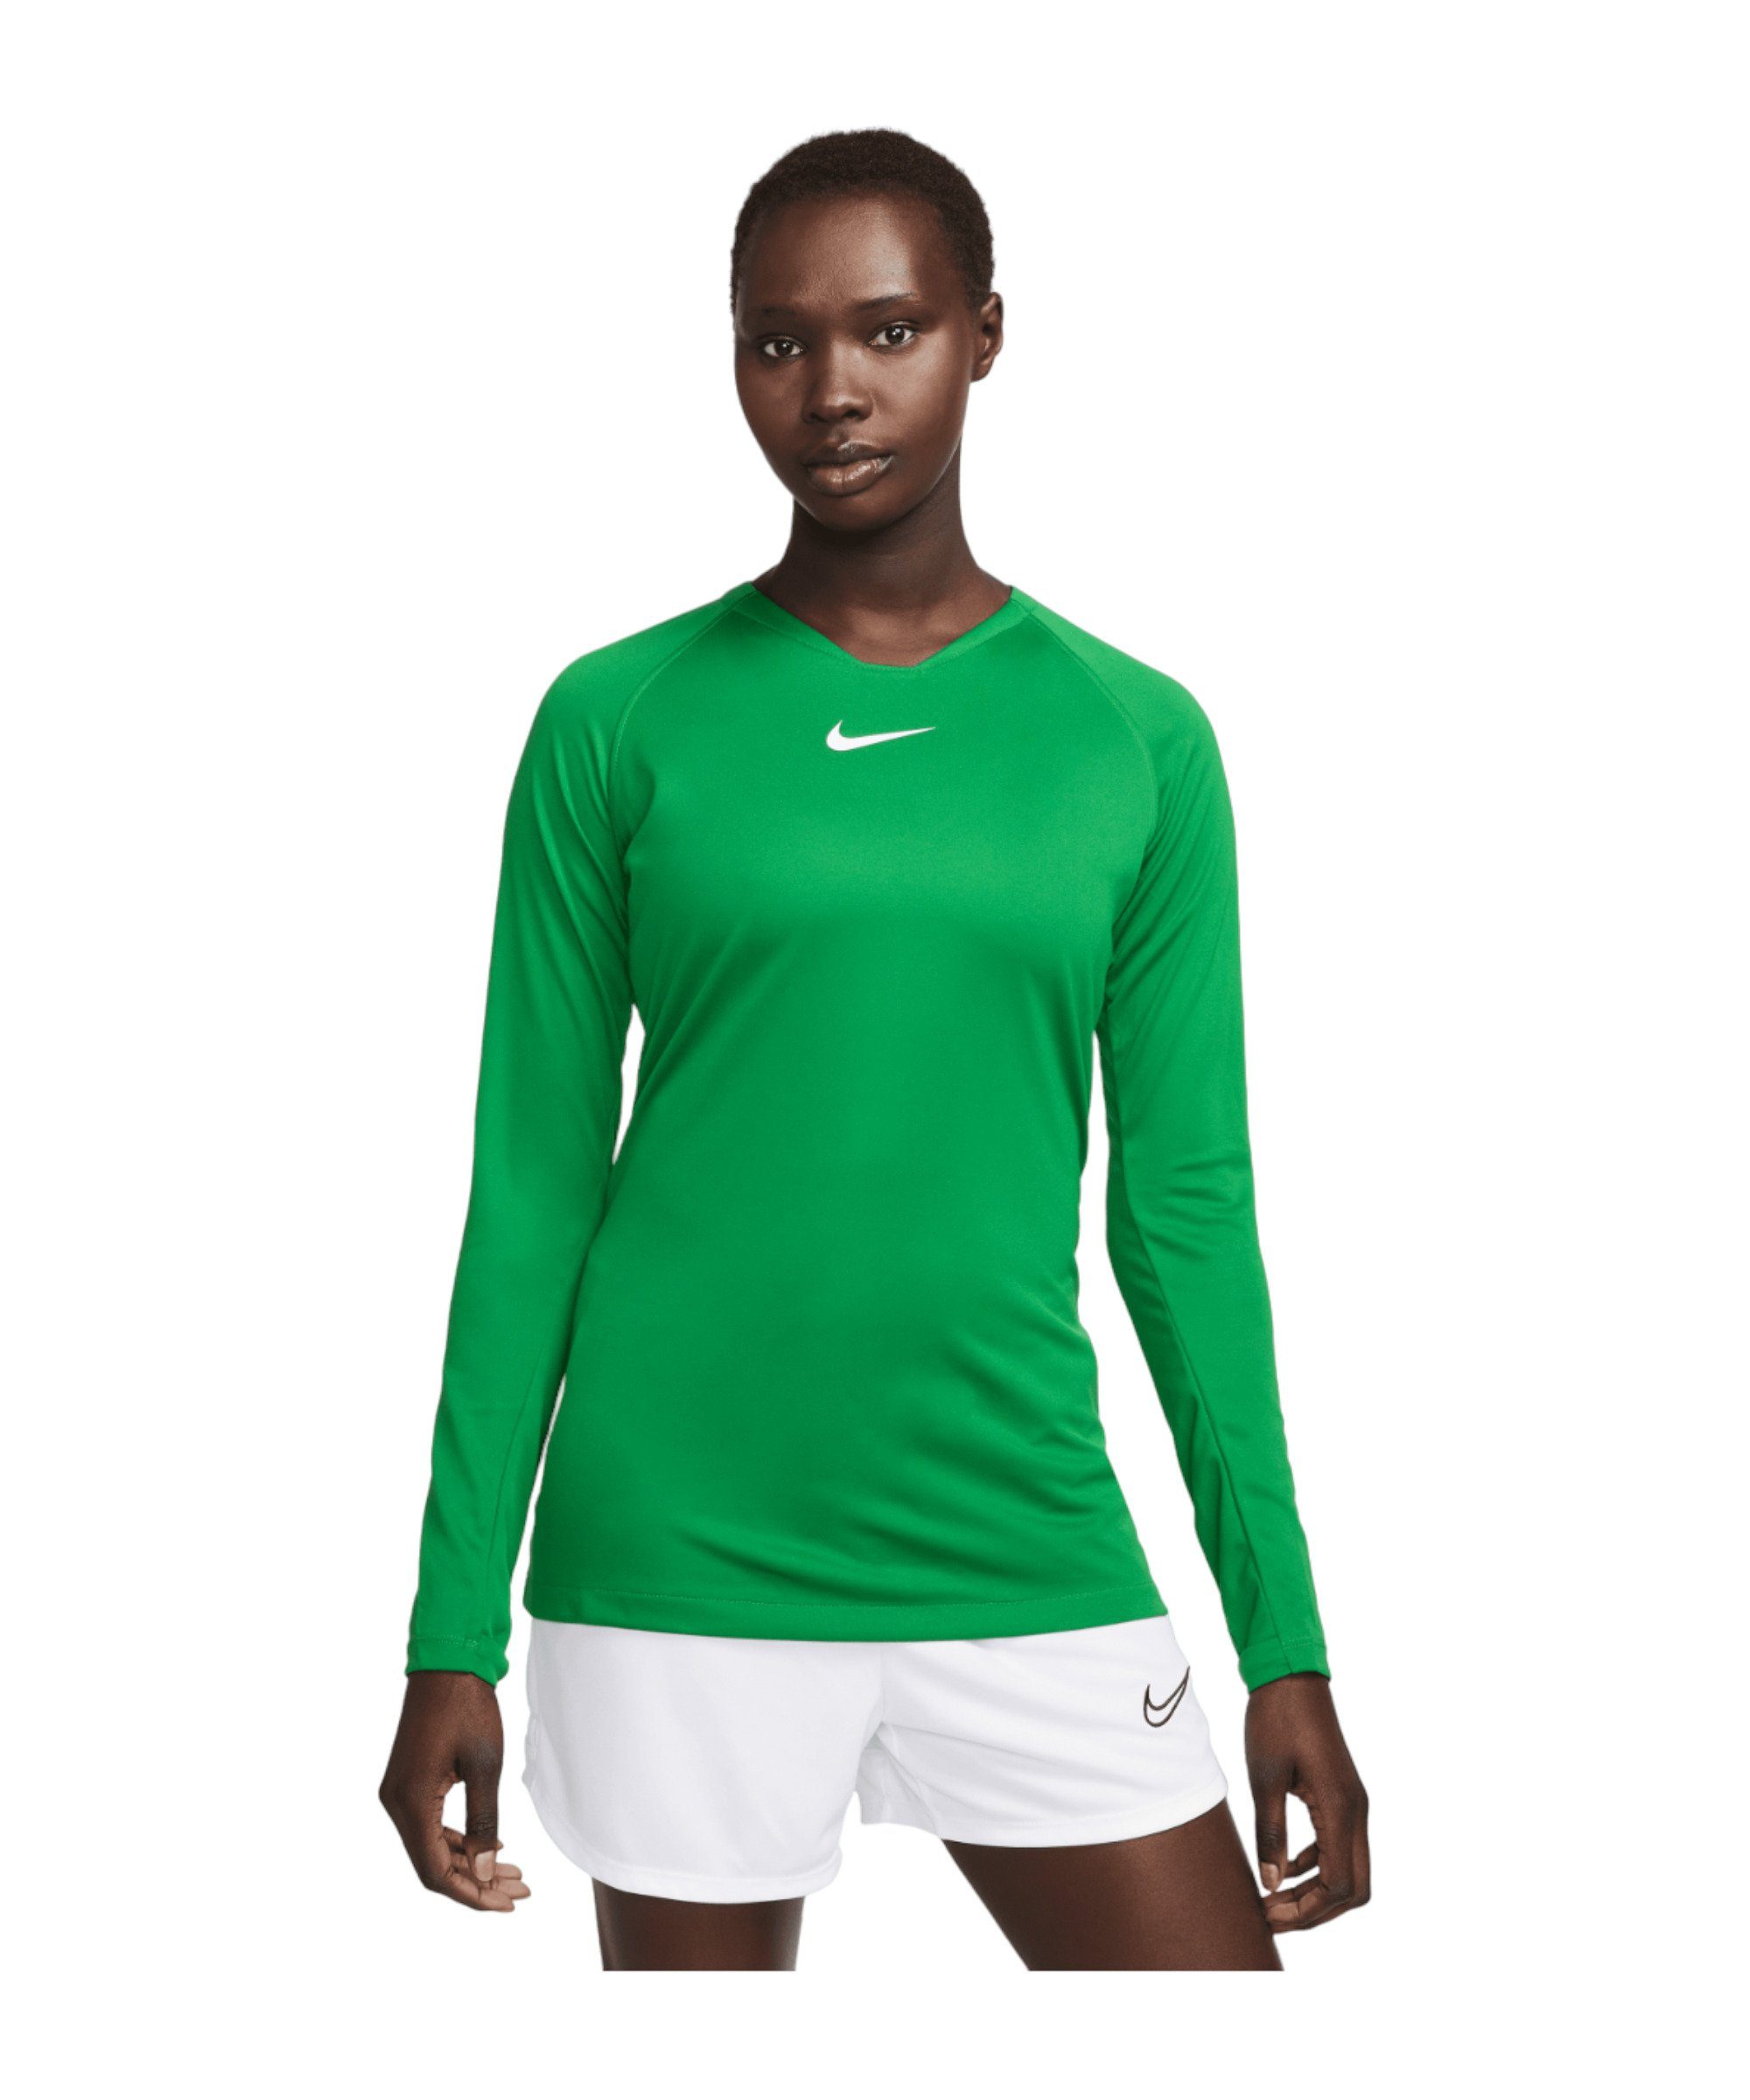 First Funktionsshirt Nike Damen gruenweiss Park default Layer